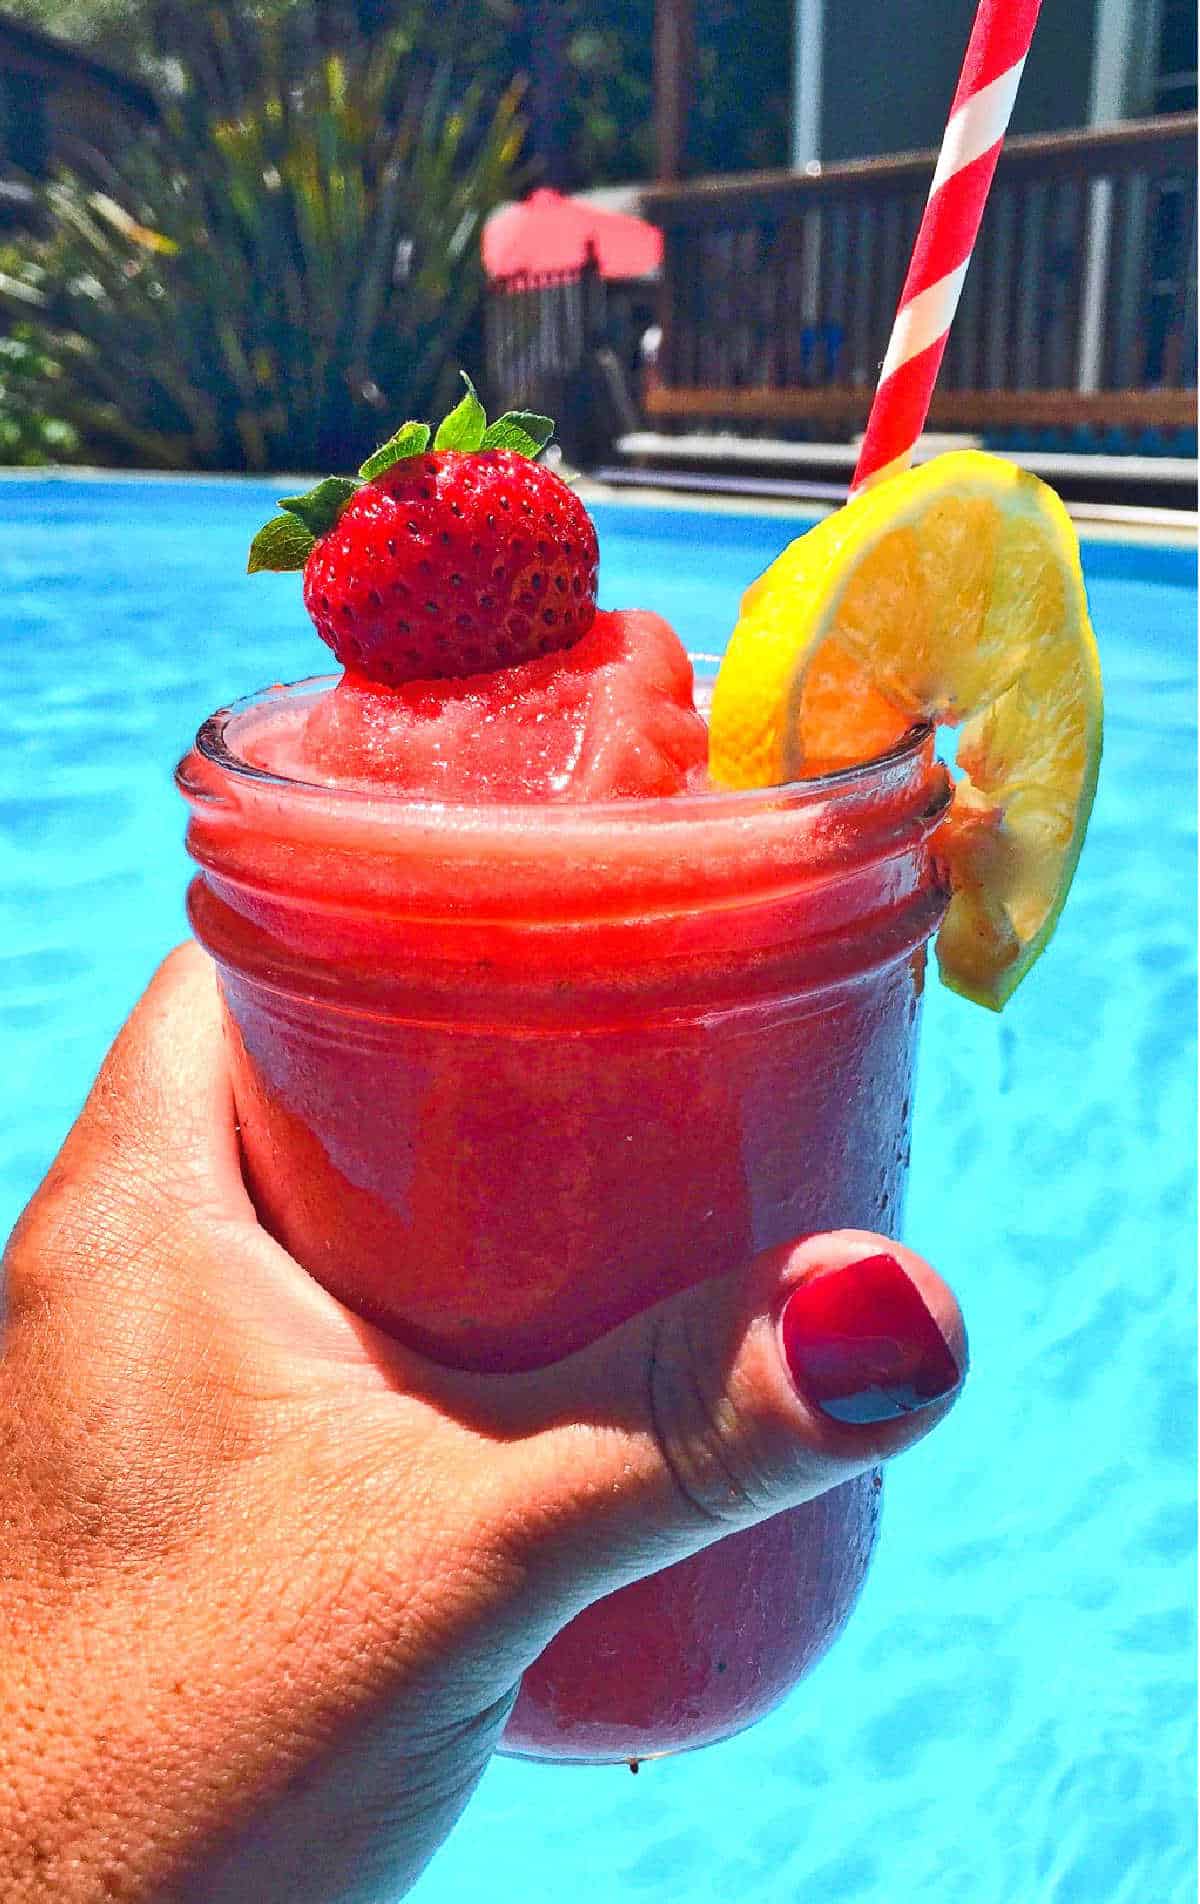 A strawberry vodka slush enjoyed by the pool.